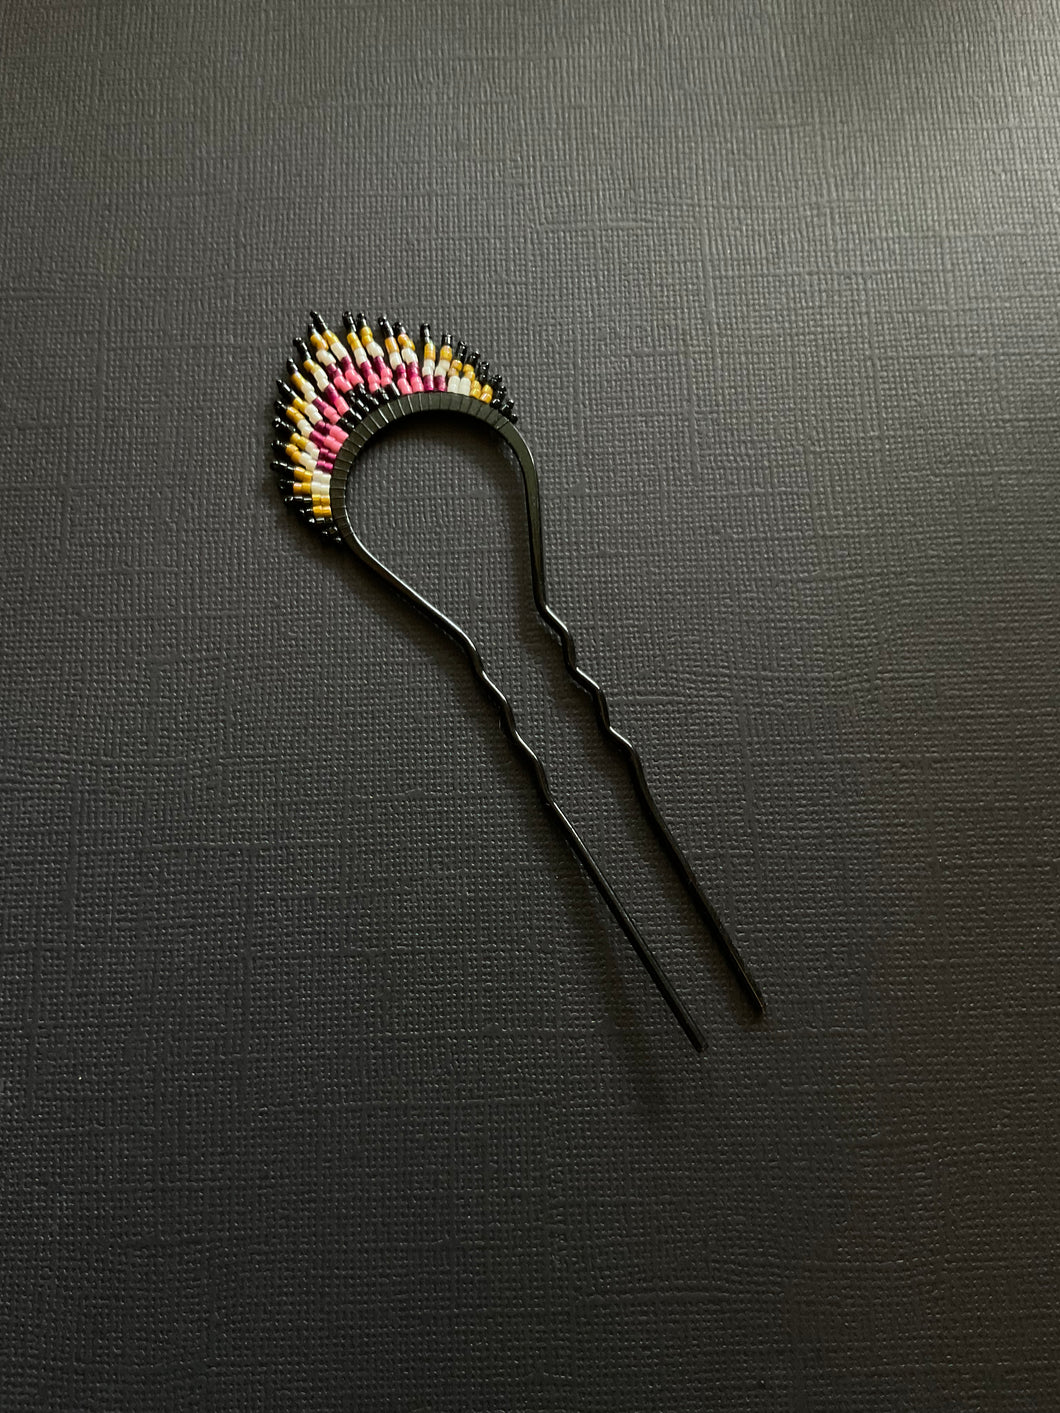 Beaded Hair Fork 2115